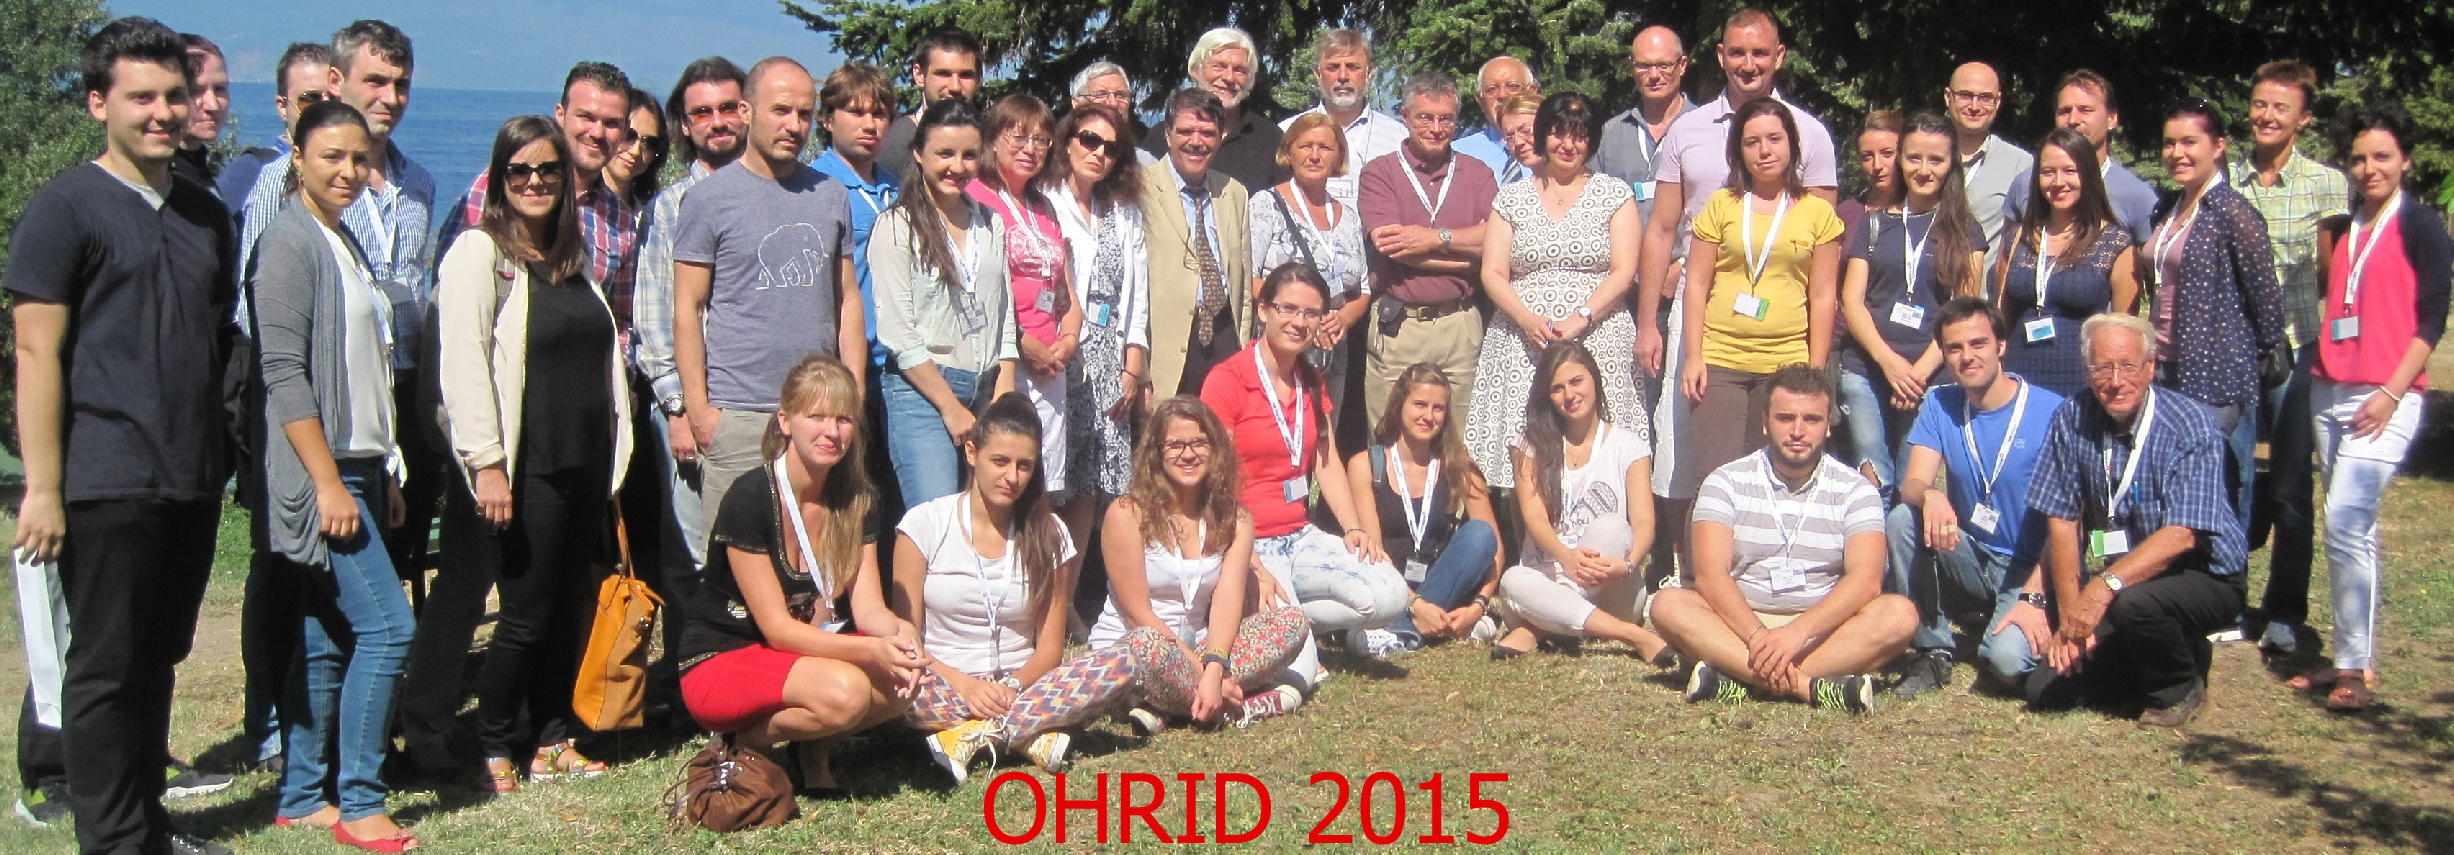 Ohrid15